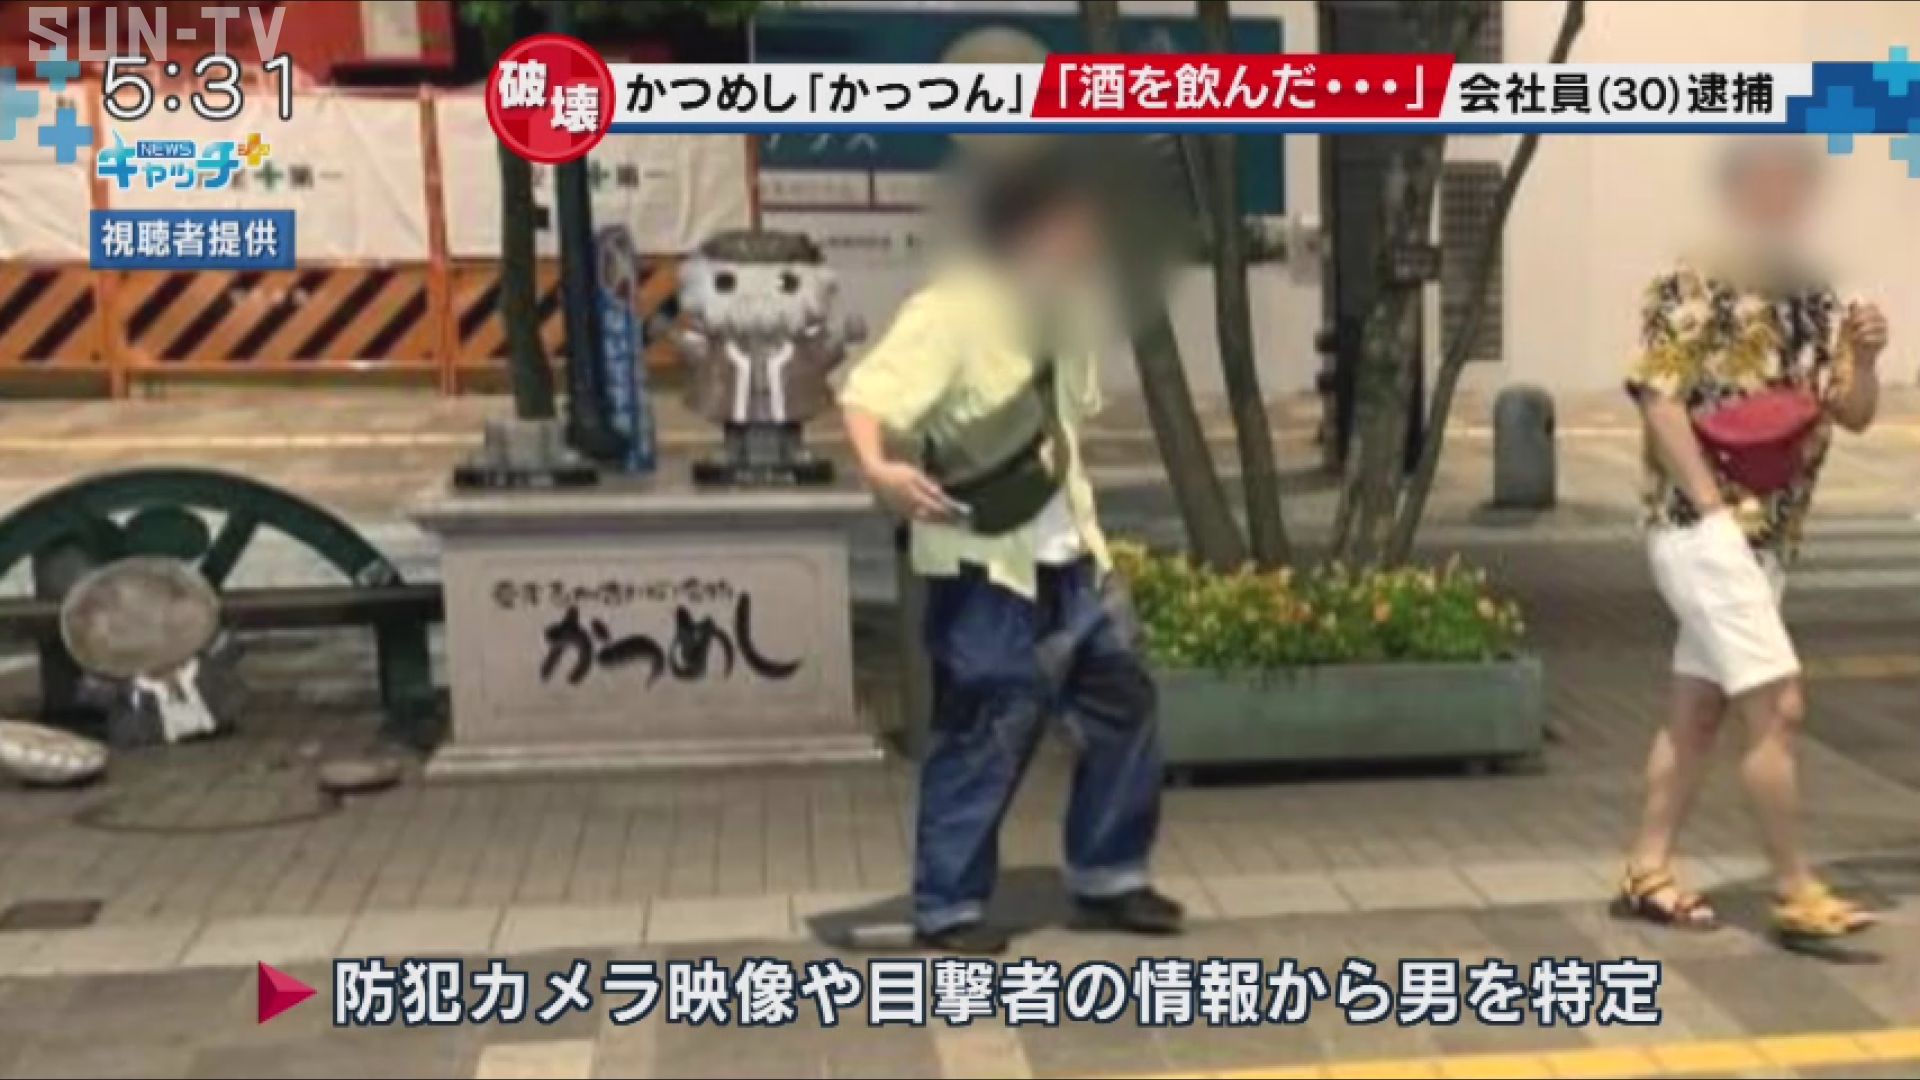 加古川名物・かつめし「かっつん」石像破壊の疑いで男を逮捕 - サン